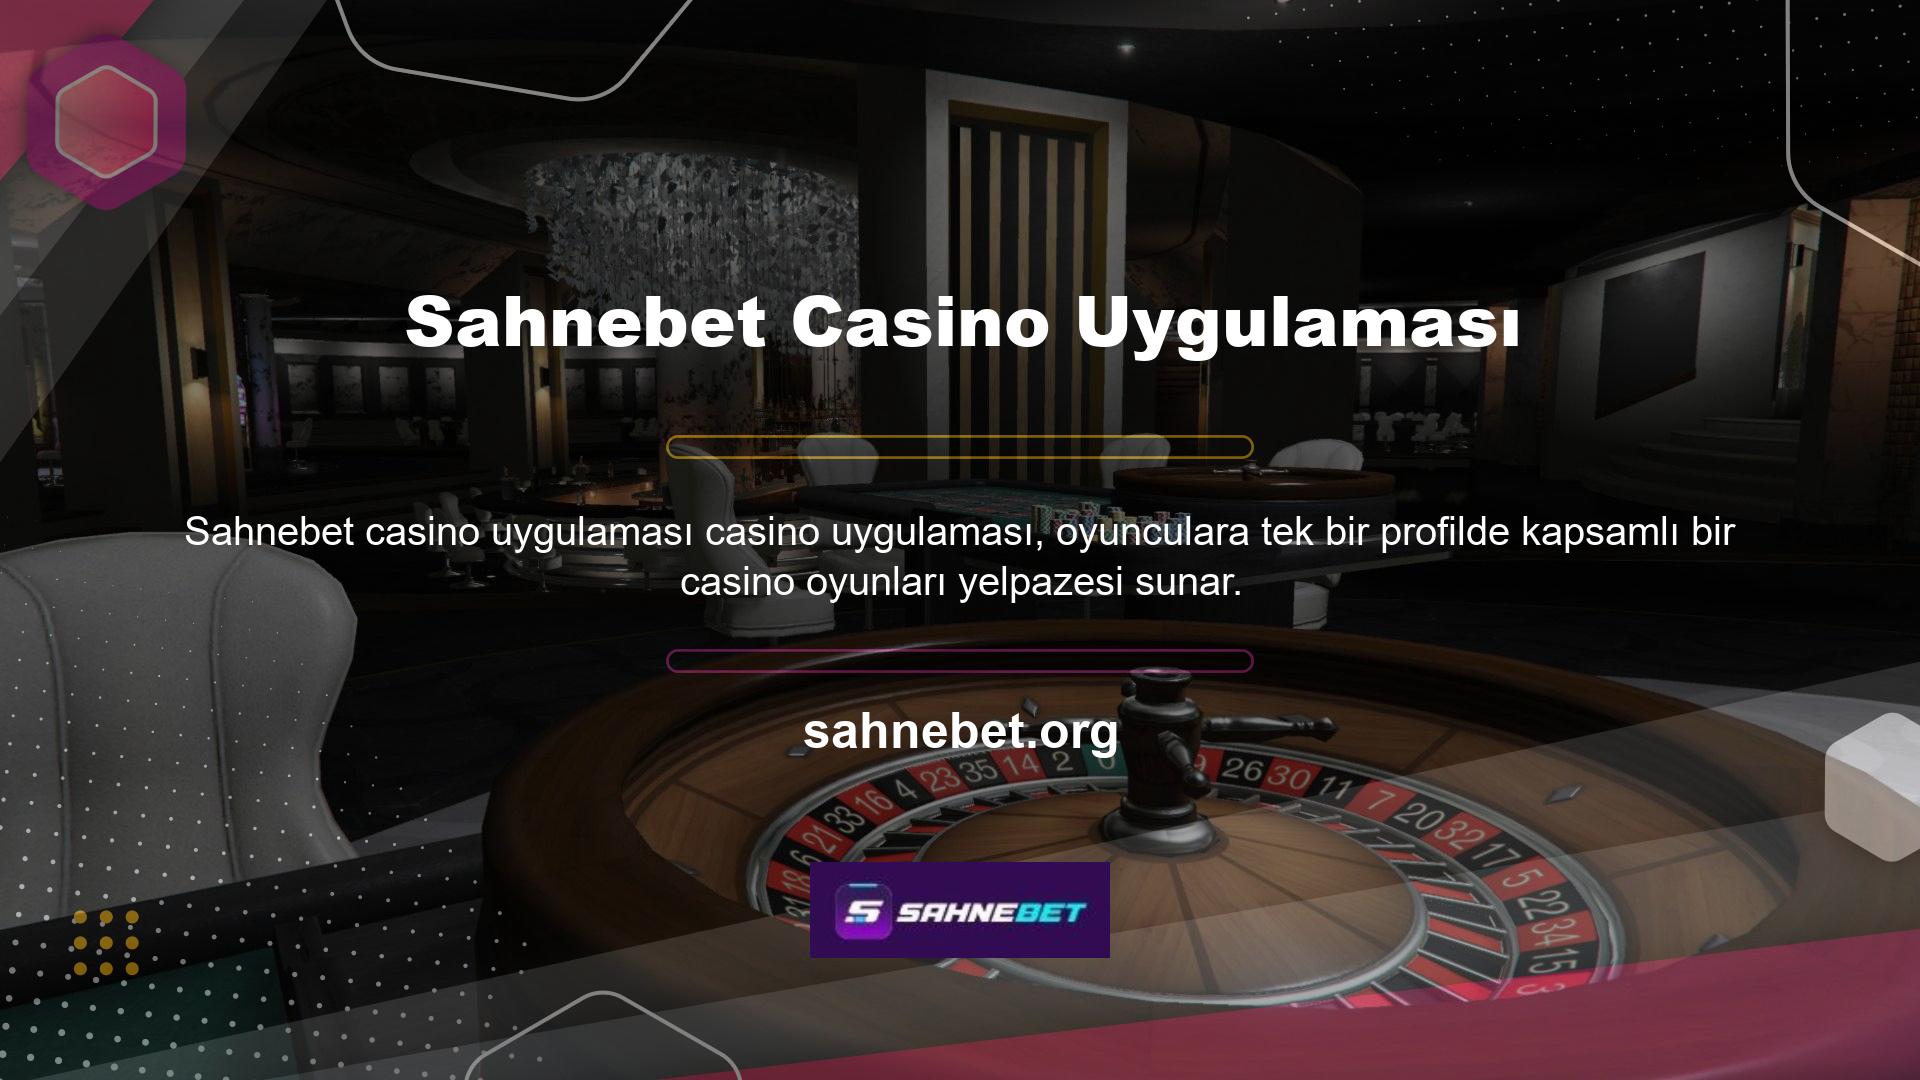 Oyuncular siteye üye olmadan casino uygulaması üzerinden oyun parametrelerini kontrol edebilirler